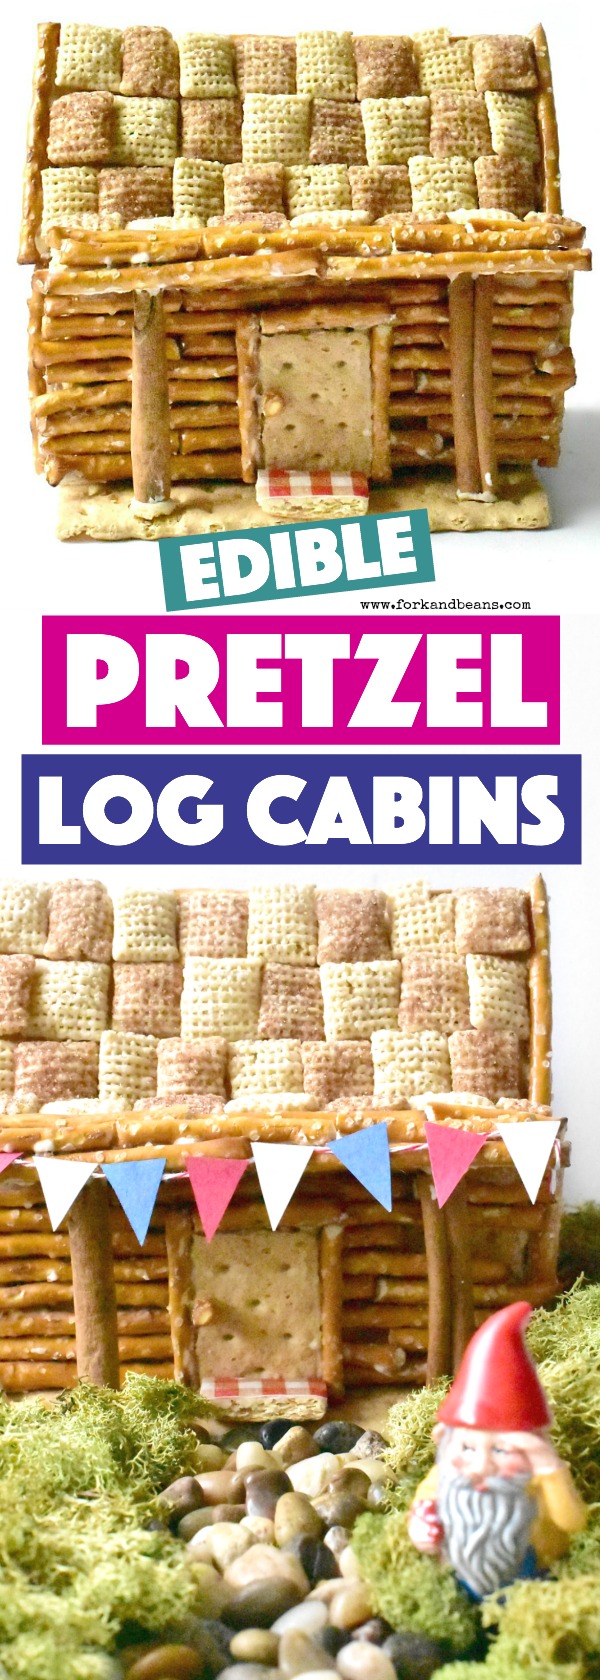 pretzel log cabin instructions